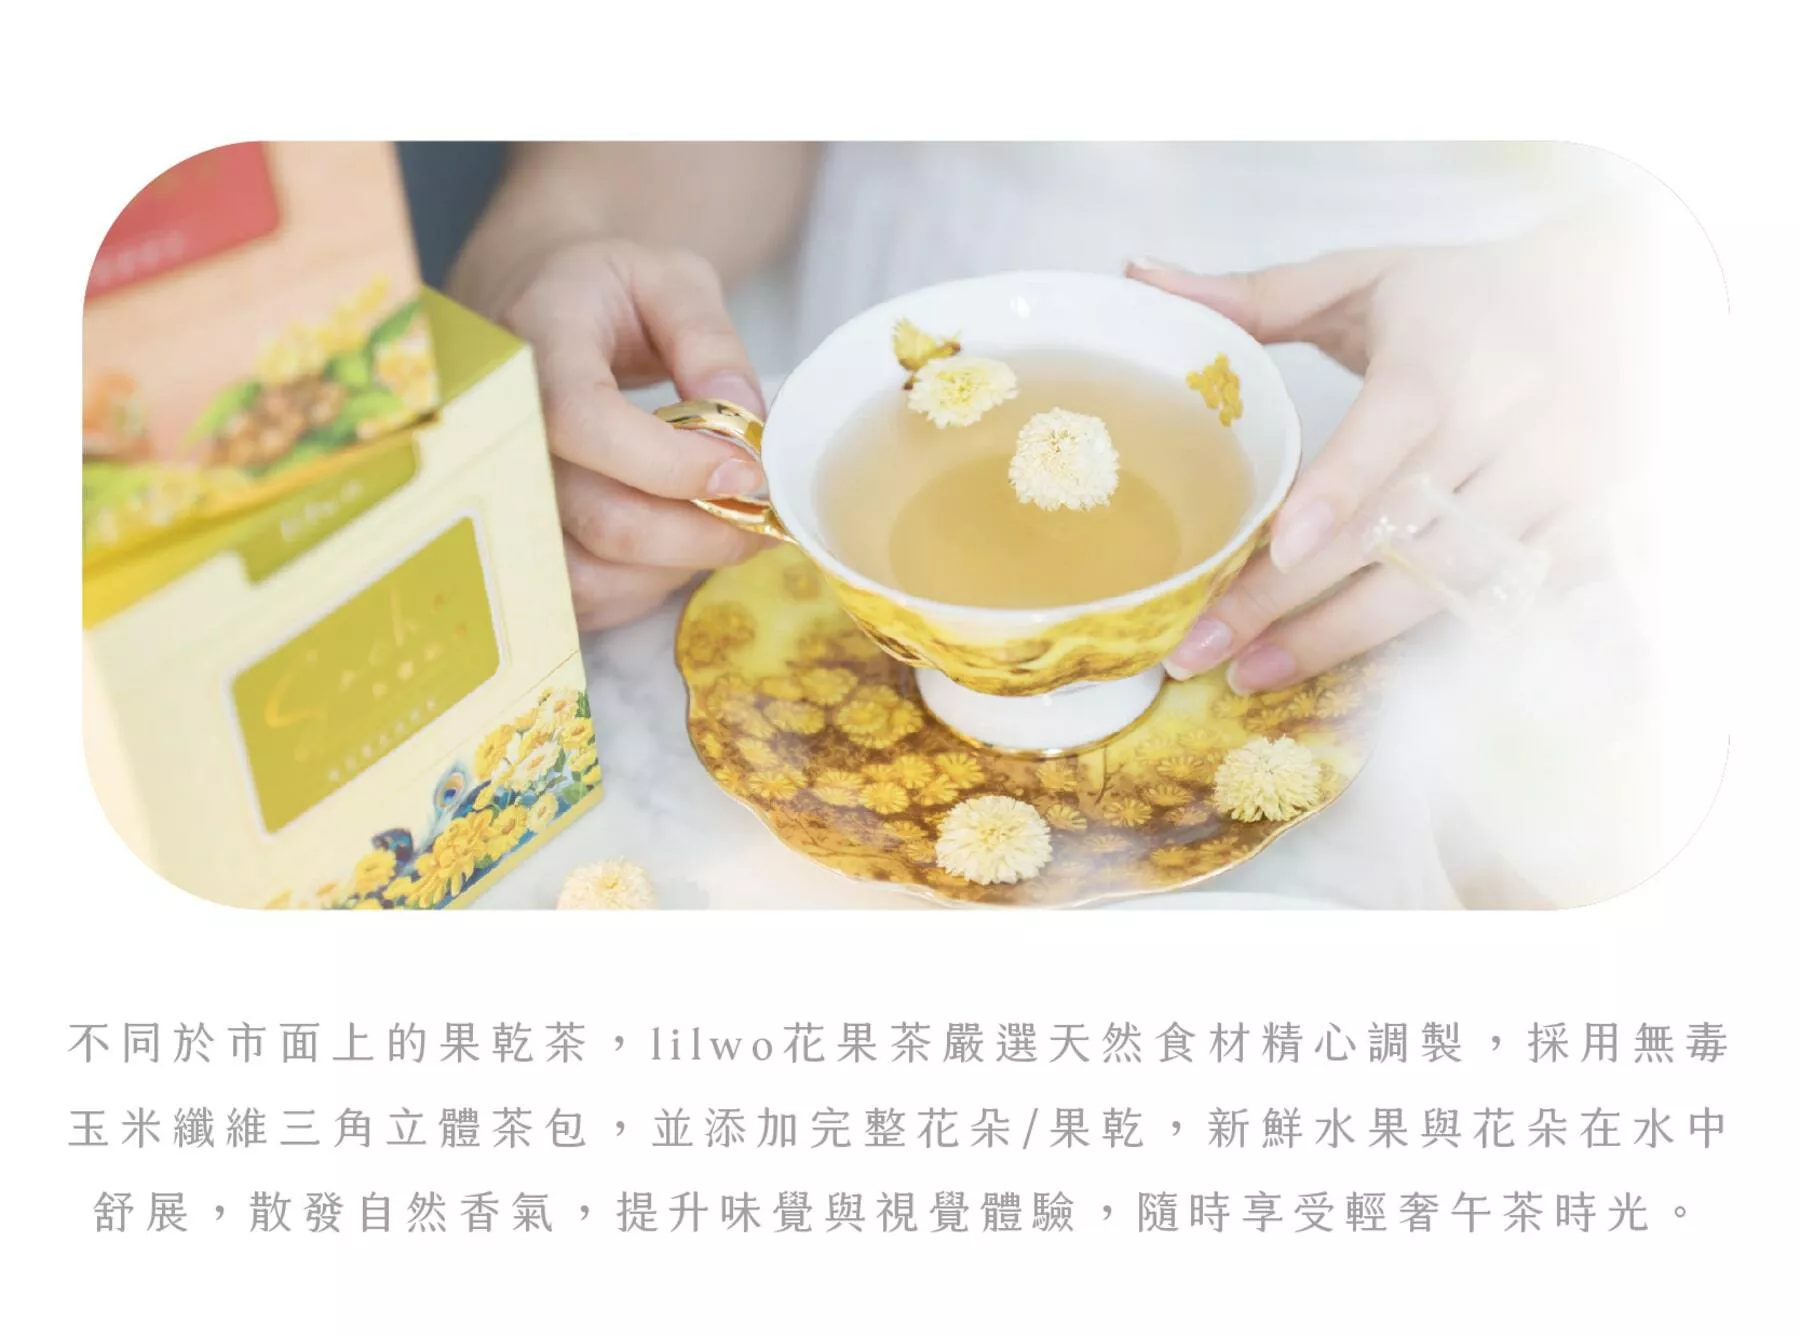 lilwo 花果茶嚴選天然食材精心調製